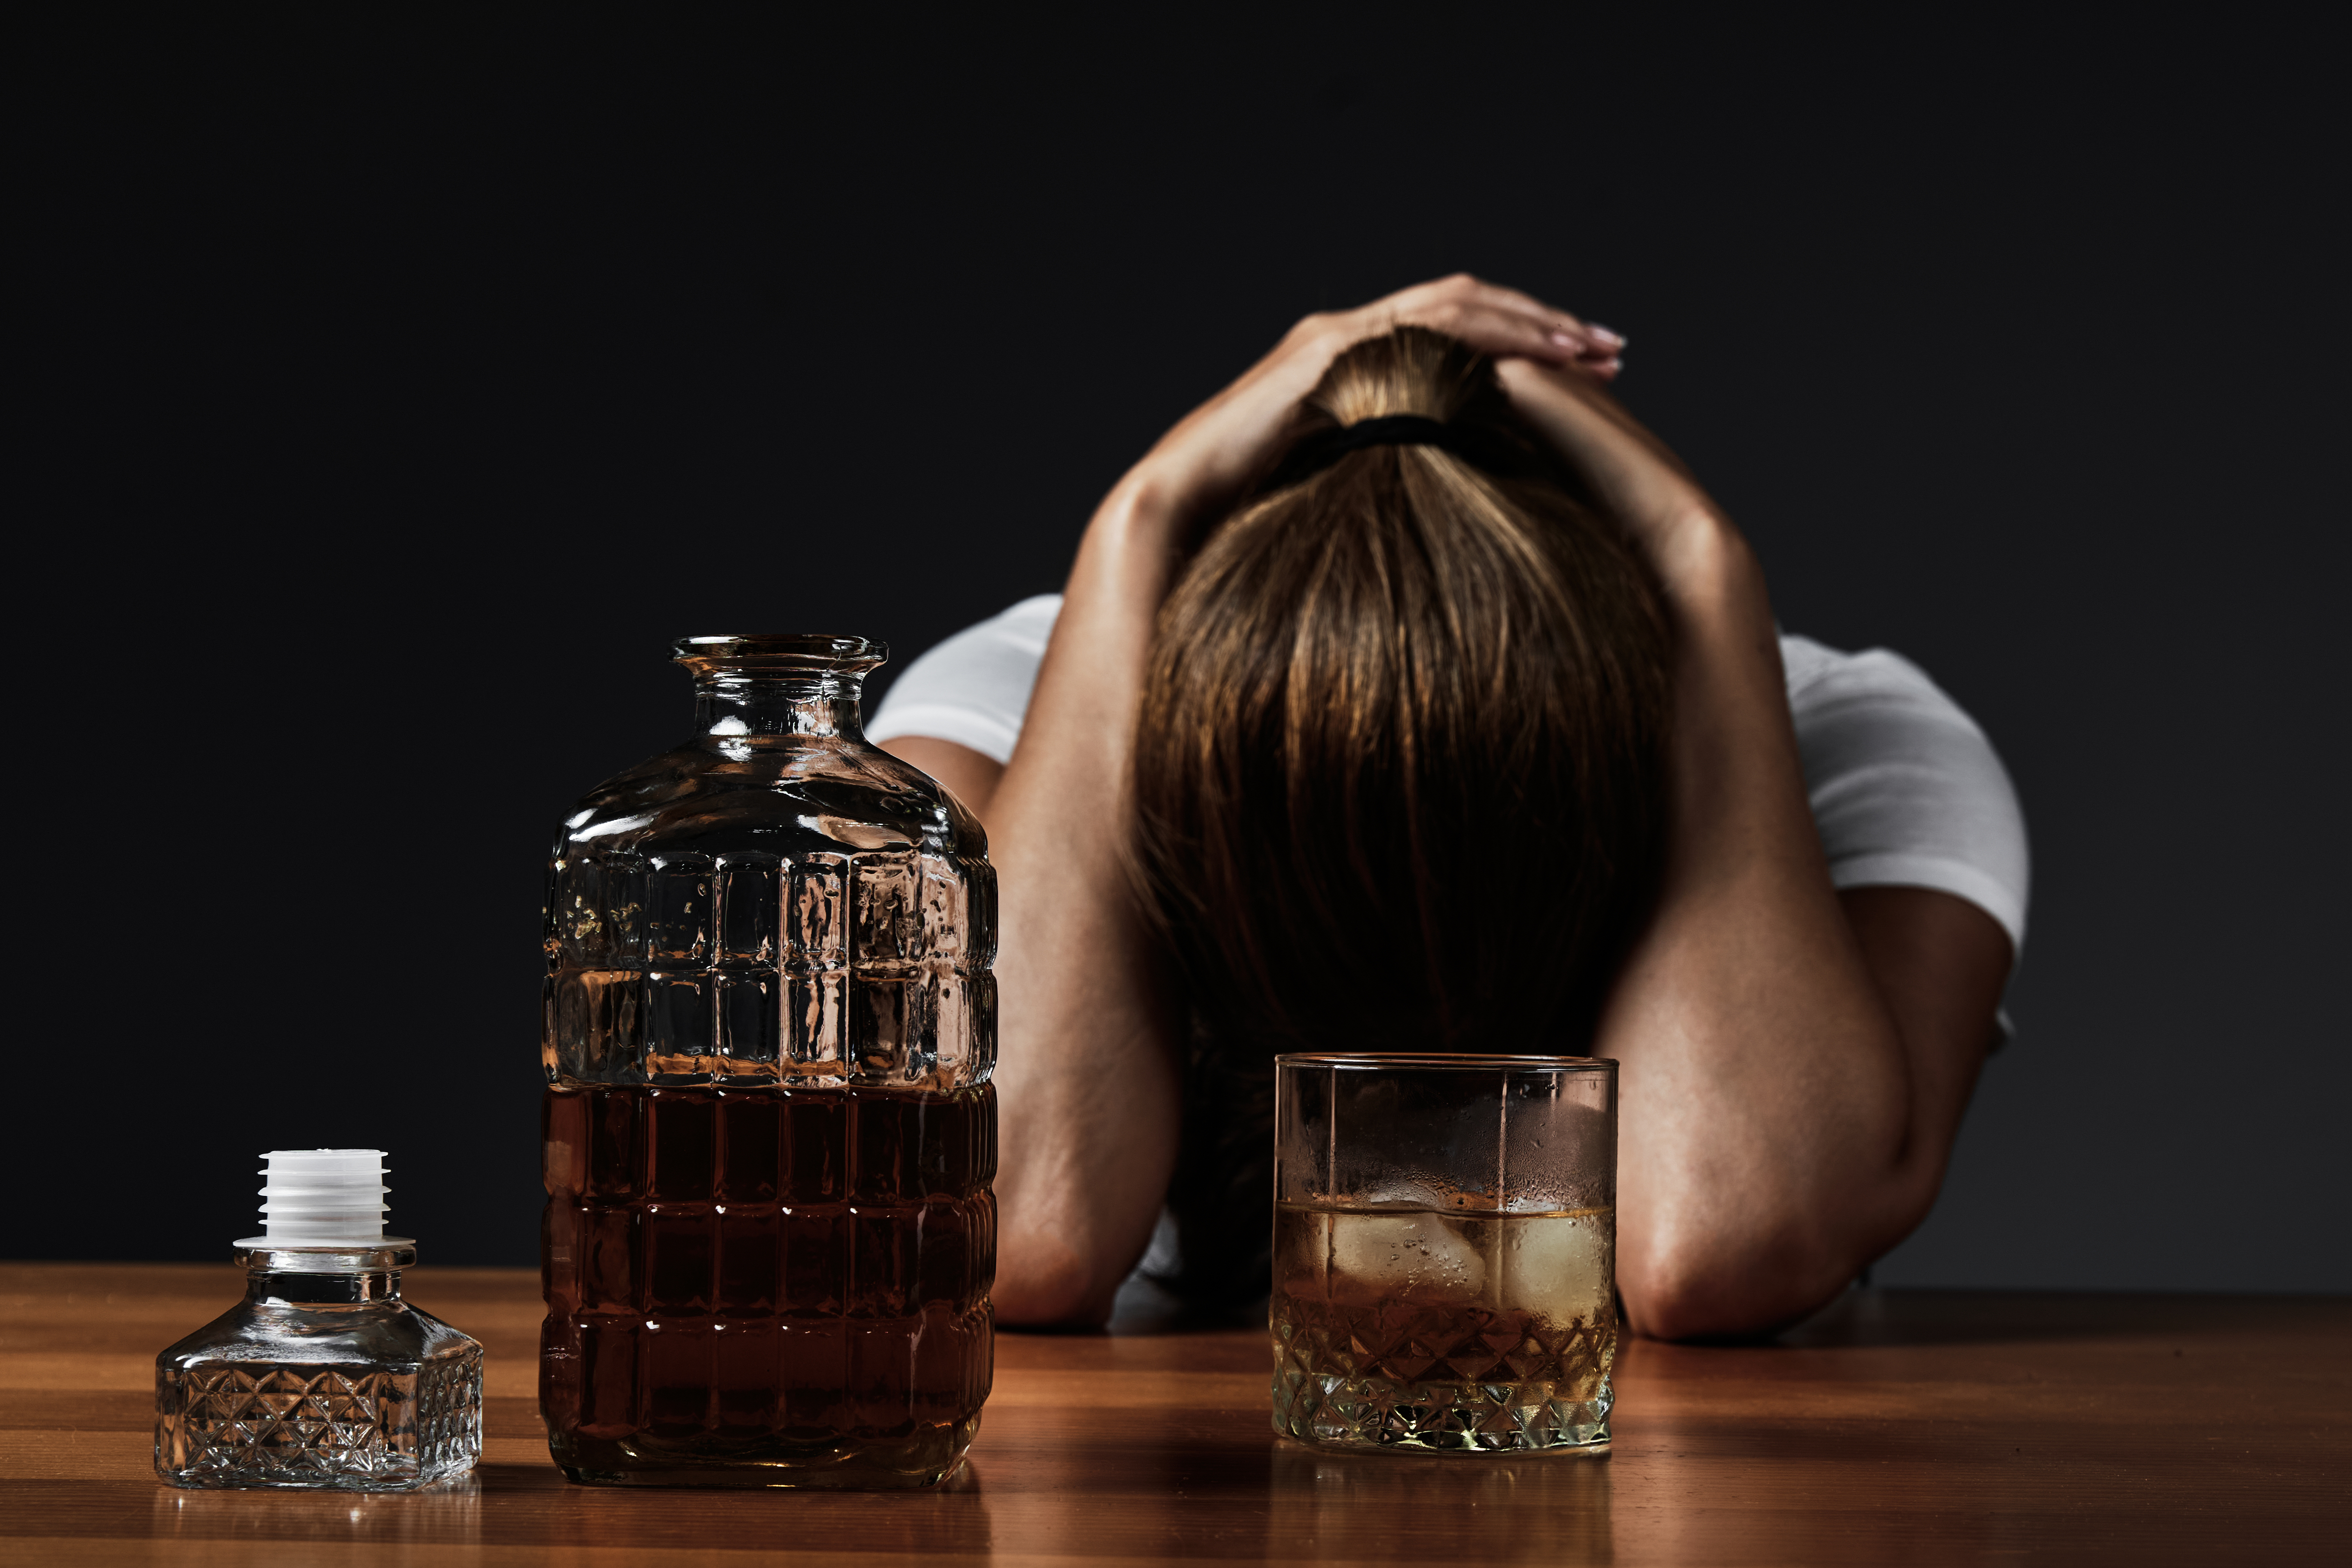 Los expertos de Mayo Clinic recomendaron concurrir al médico si se tiene problemas con el alcohol o con las drogas, u otros problemas de salud mental además de la ansiedad